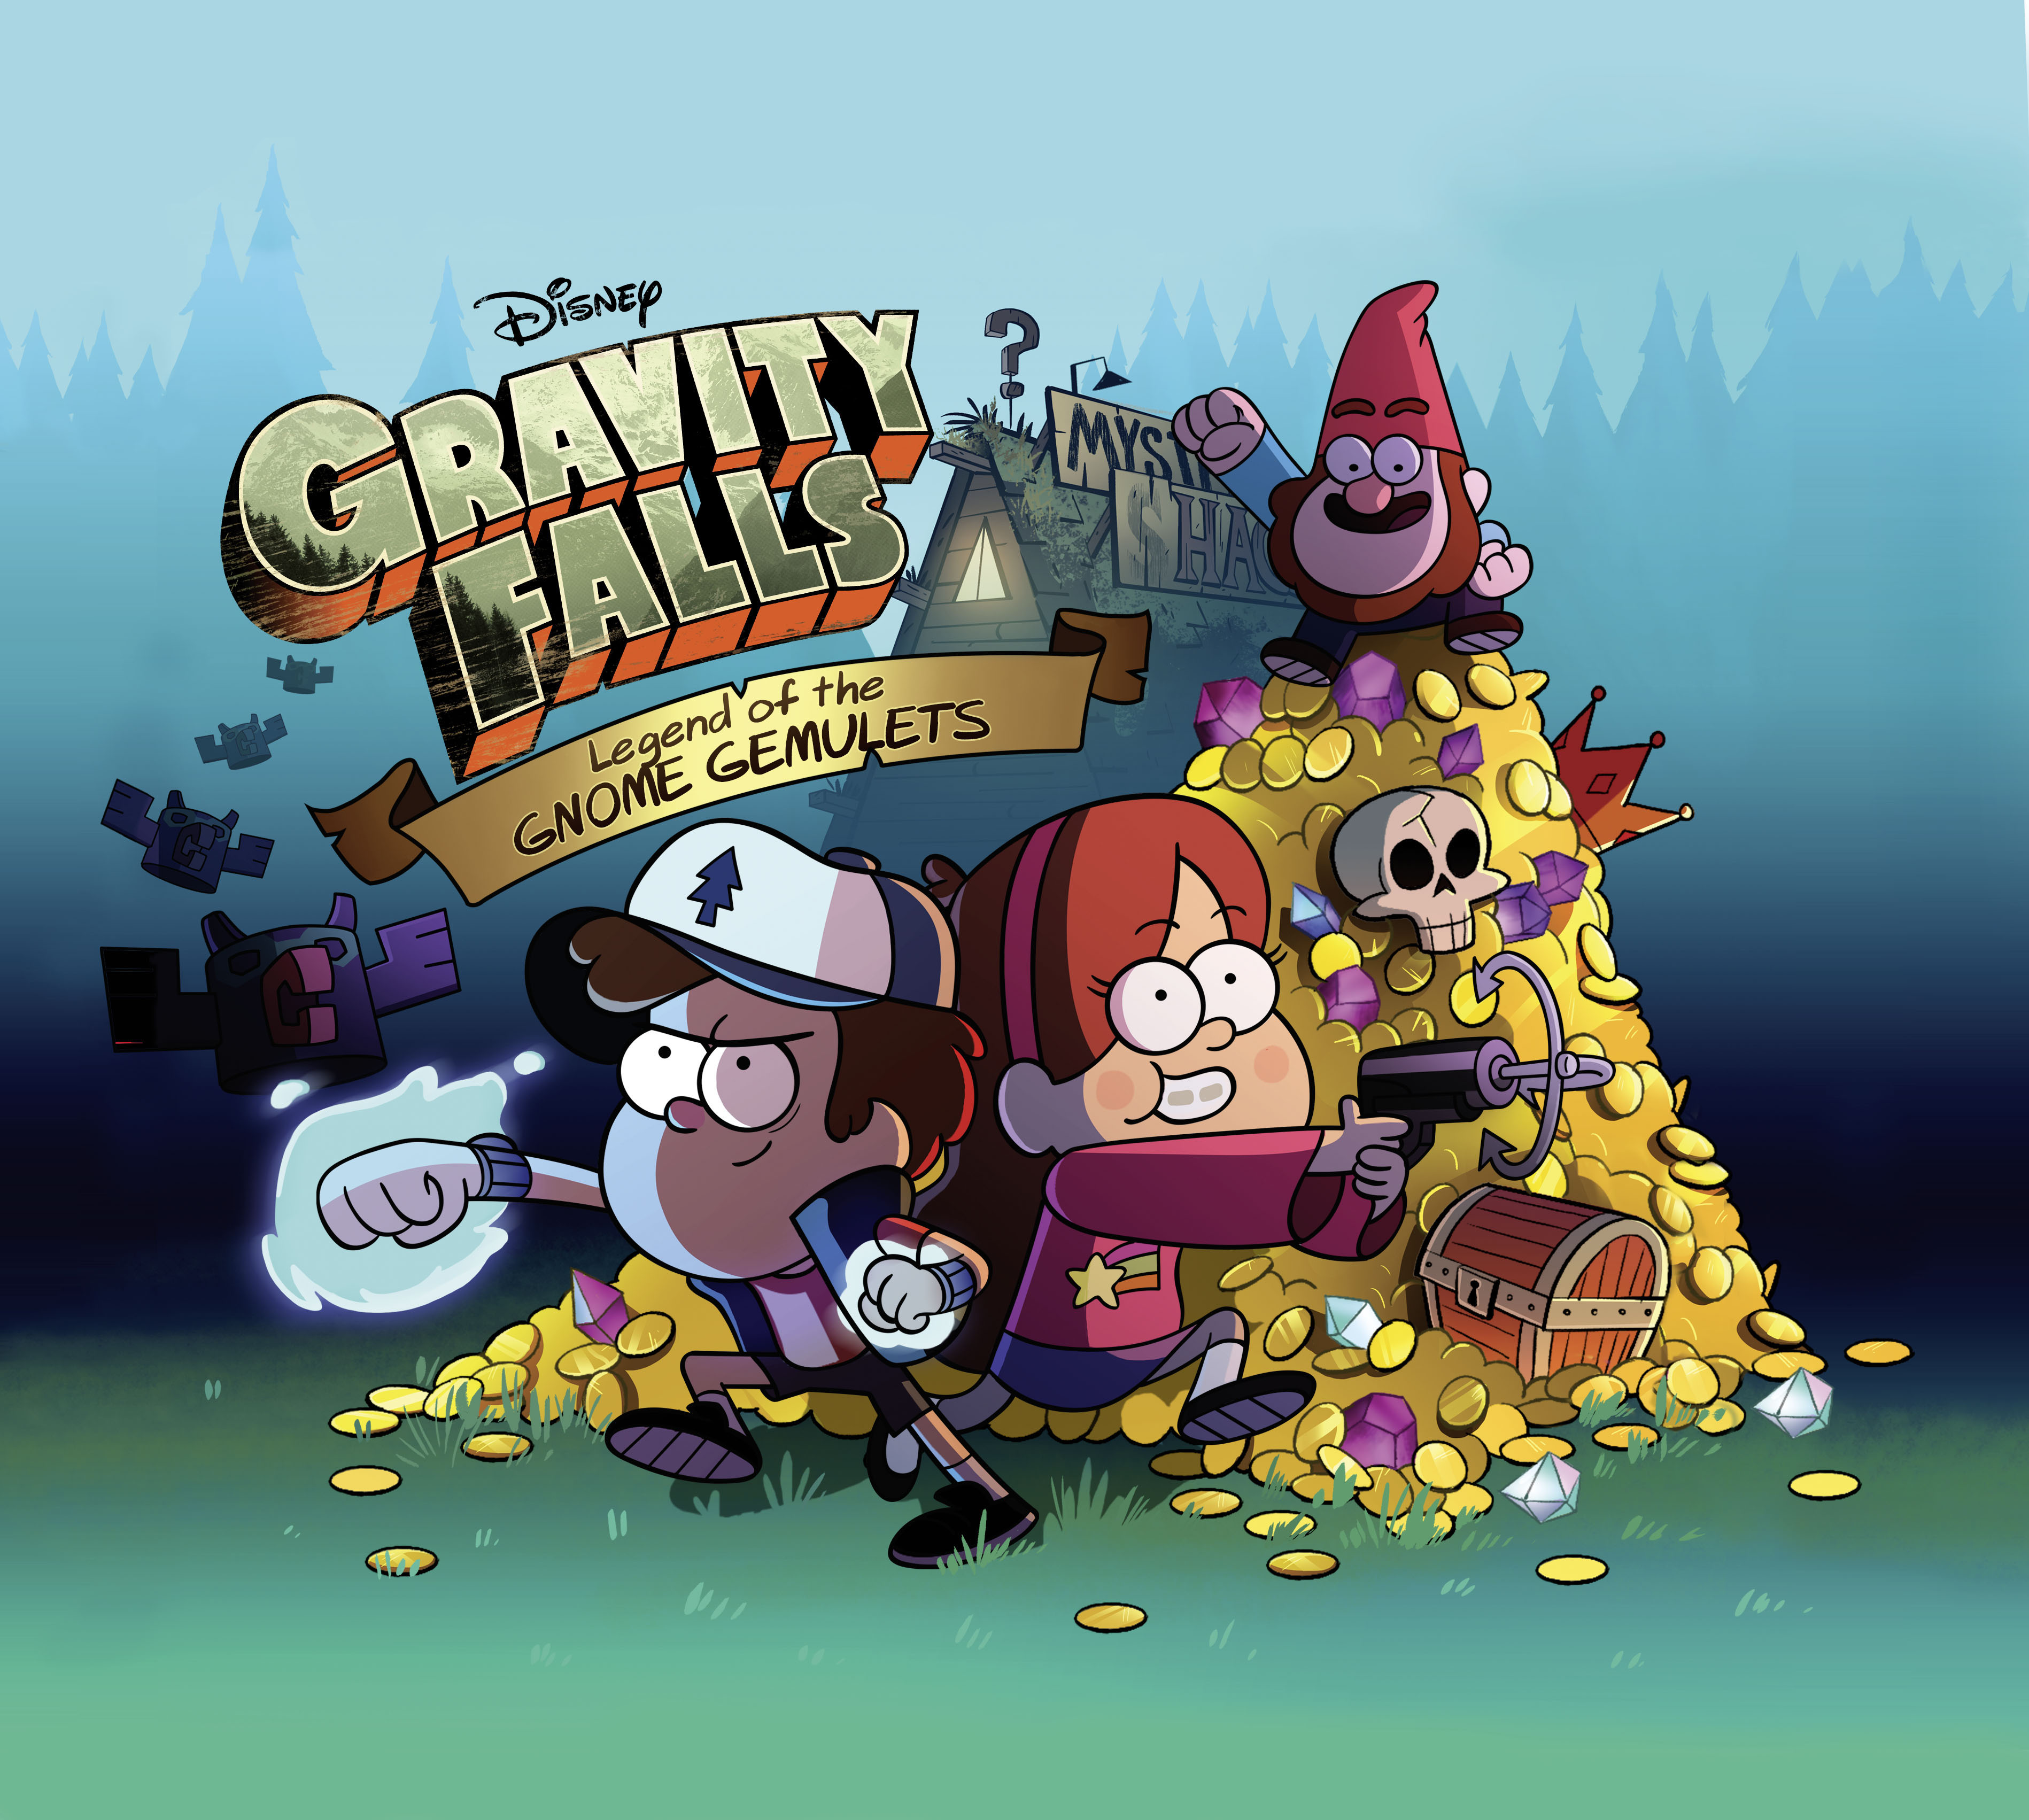 Gravity Falls: Legend of the Gnome Gemulets, annunciato ufficialmente